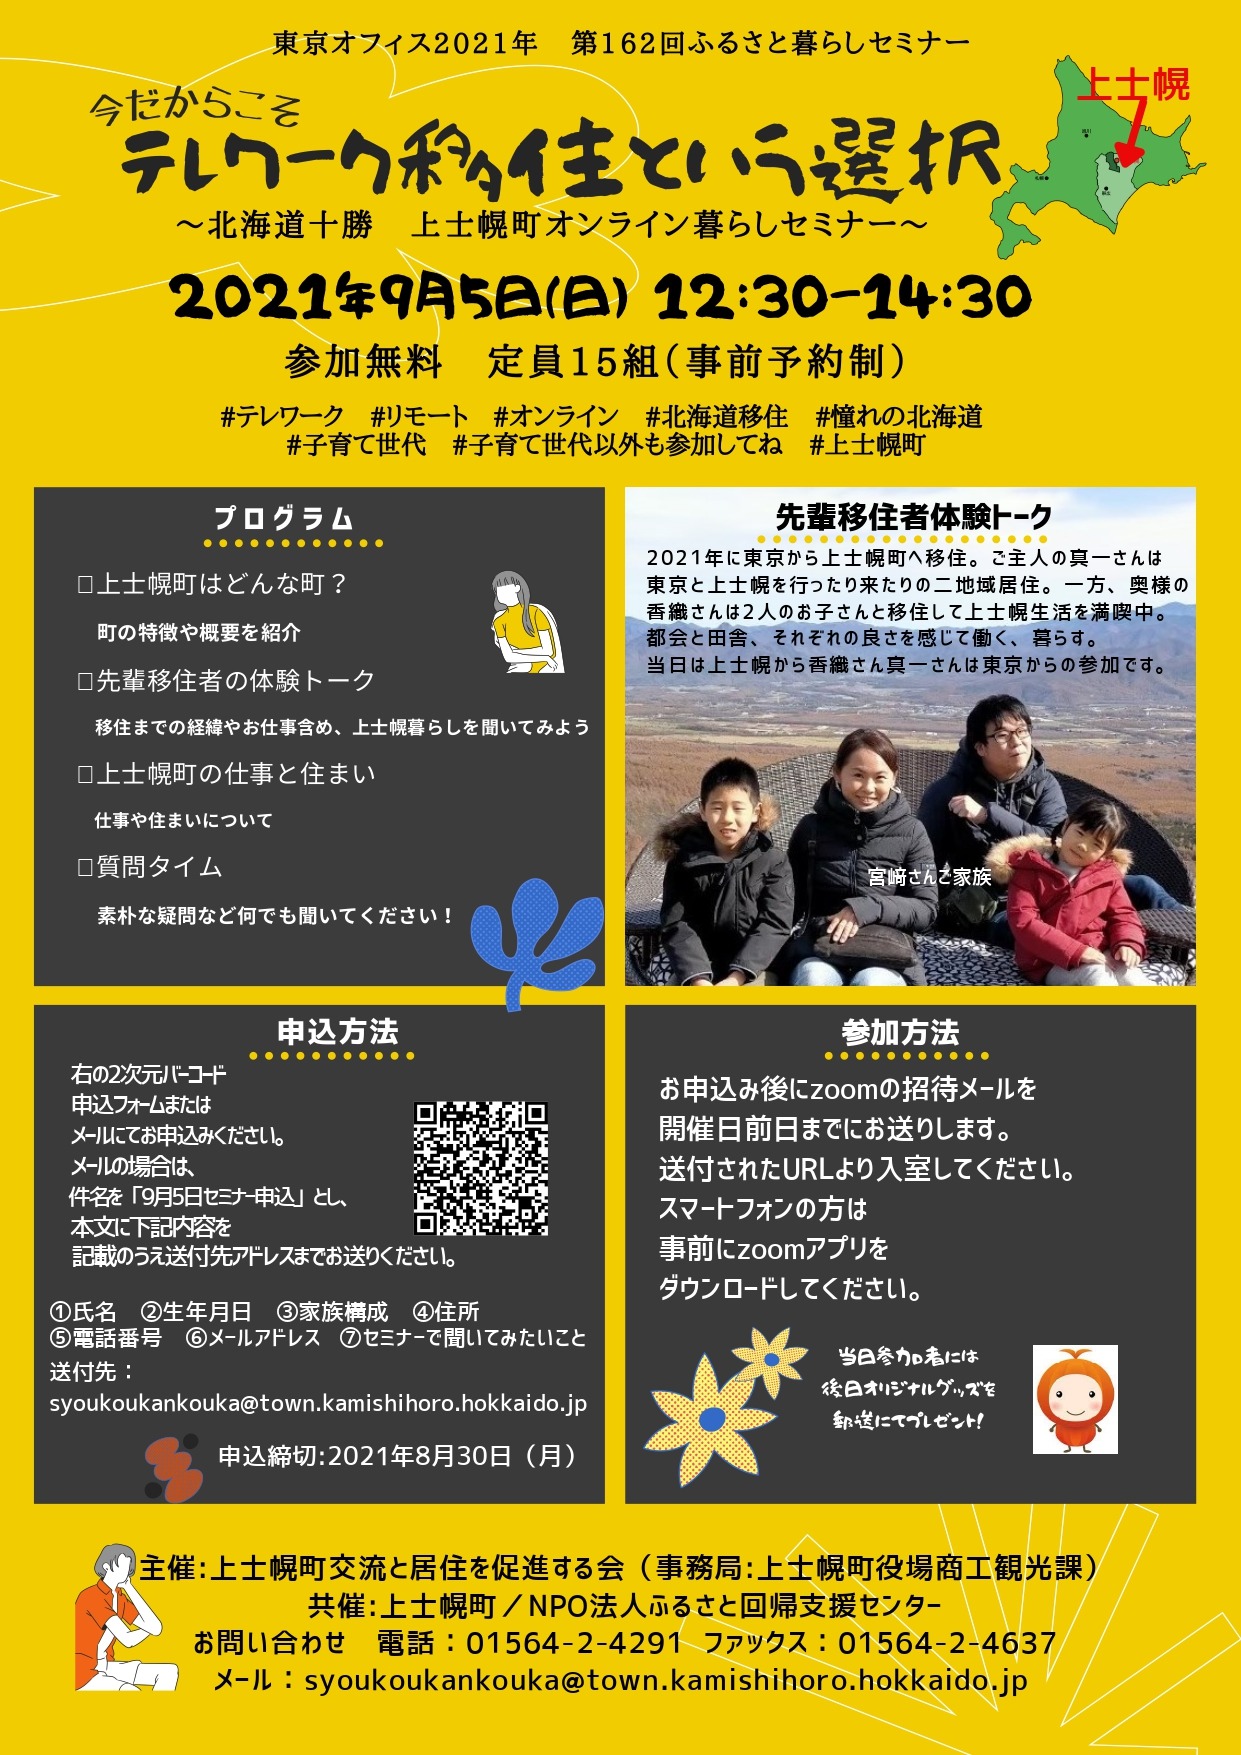 【移住相談会】上士幌町オンライン暮らしセミナー開催のお知らせ